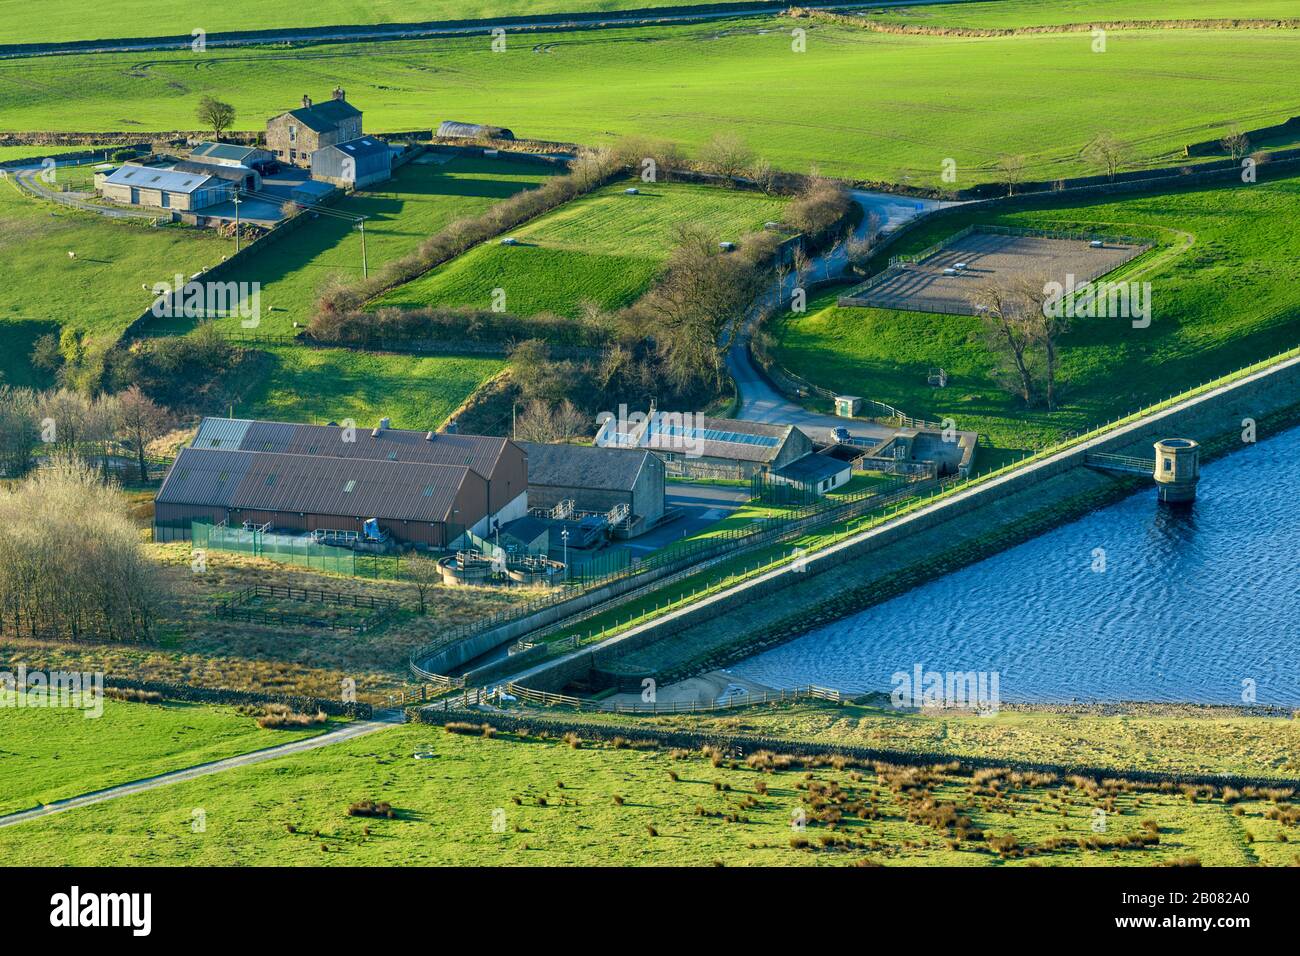 Vue rurale ensoleillée sur les champs de ferme, le mur de remblai, le barrage, la tour de valve et les travaux de traitement de l'eau au réservoir Embsay - Yorkshire du Nord, Angleterre, Royaume-Uni. Banque D'Images